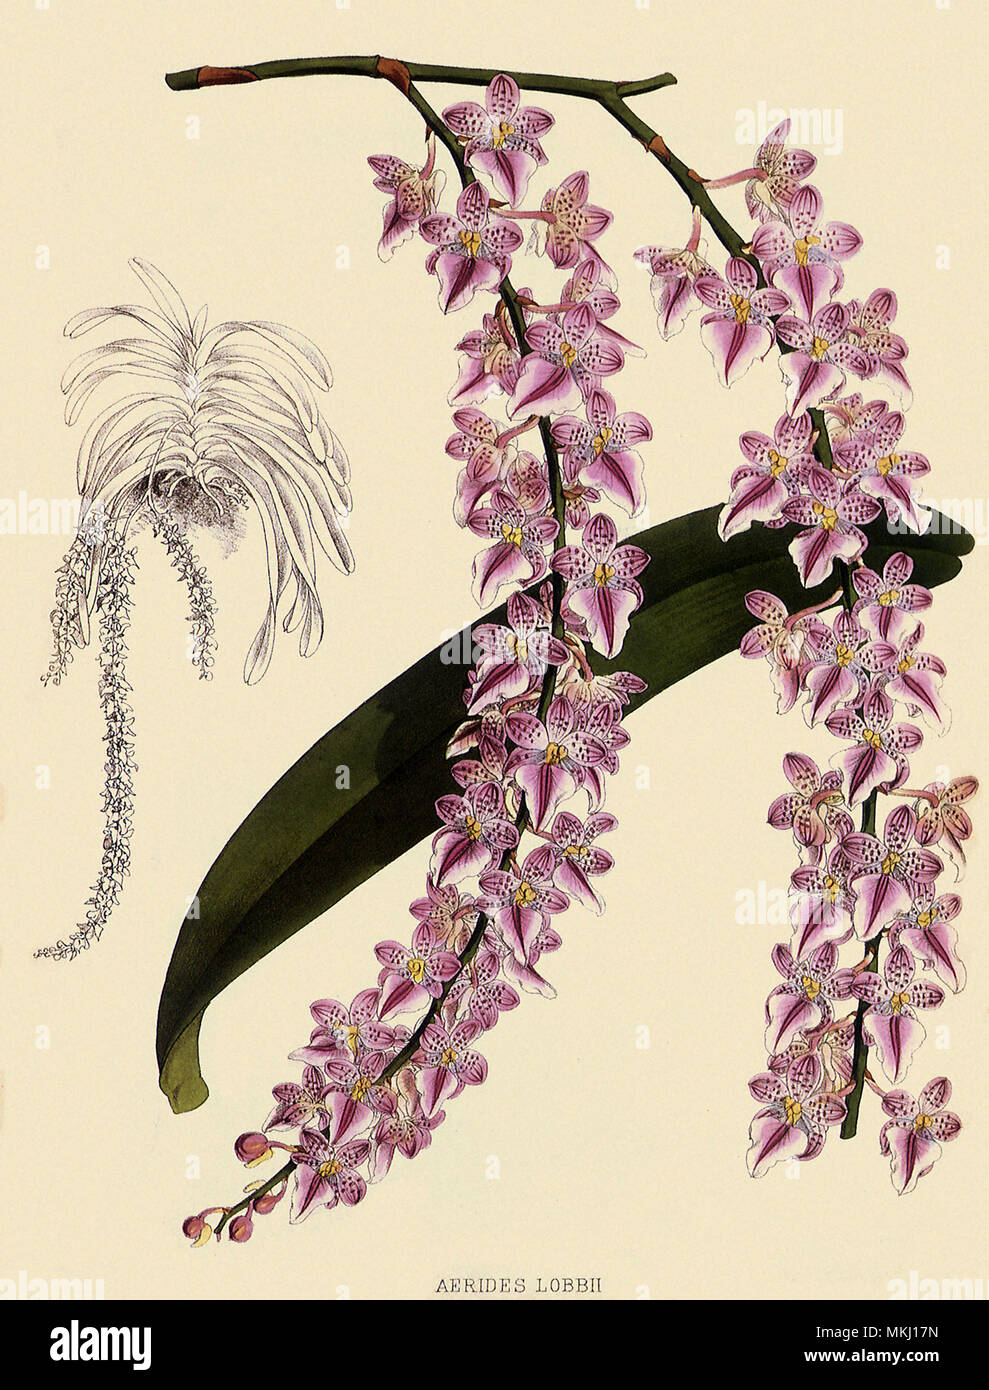 Foxtail Orchids, Aërides Lobbii Stock Photo